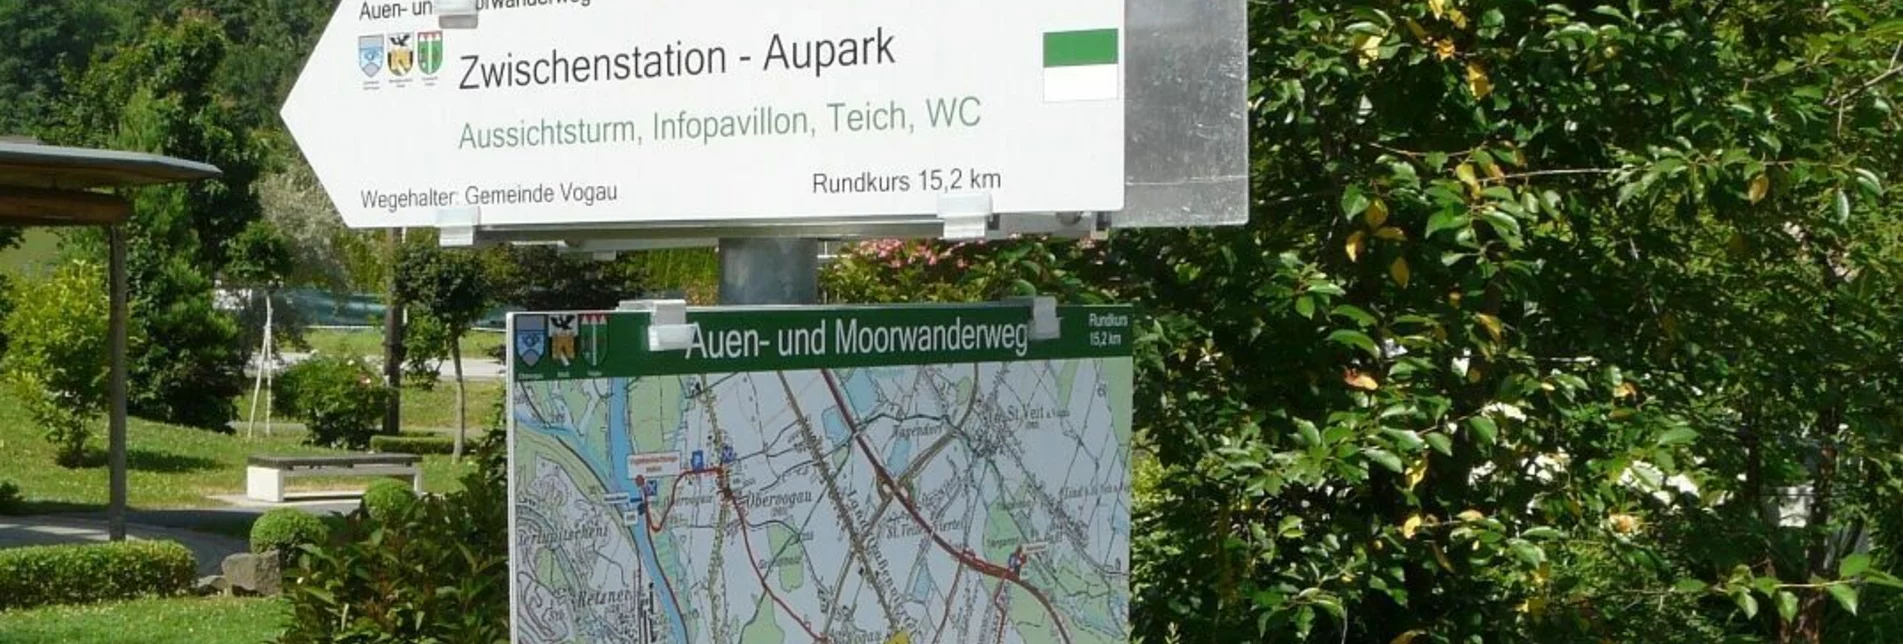 Hiking route Auen- und Moorwanderung in der Aktivregion - Touren-Impression #1 | © Südsteiermark